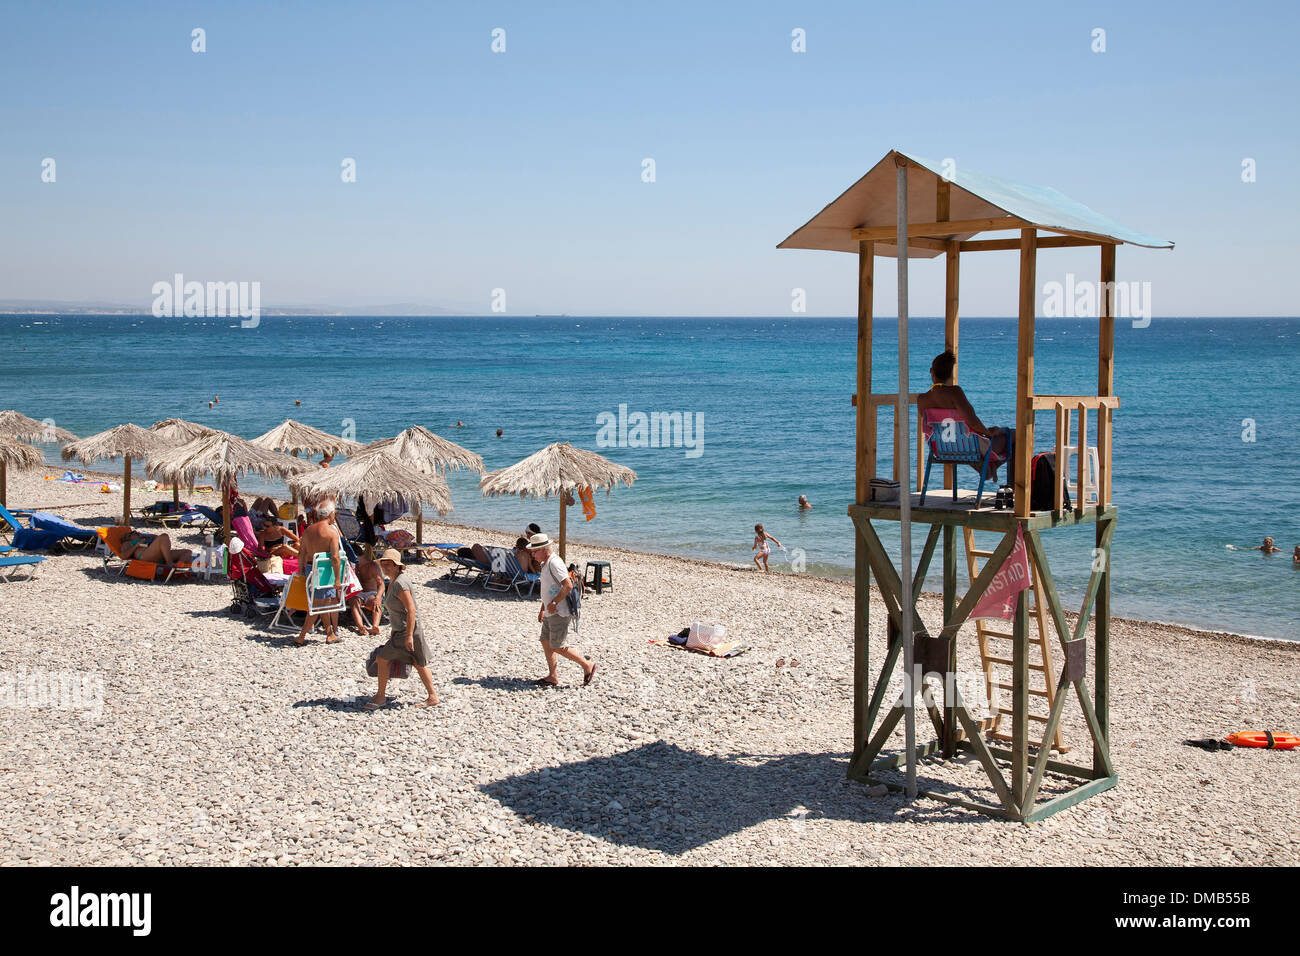 lifeguard, agia fotia, agia fotini beach, island of chios, north east aegean sea, greece, europe Stock Photo